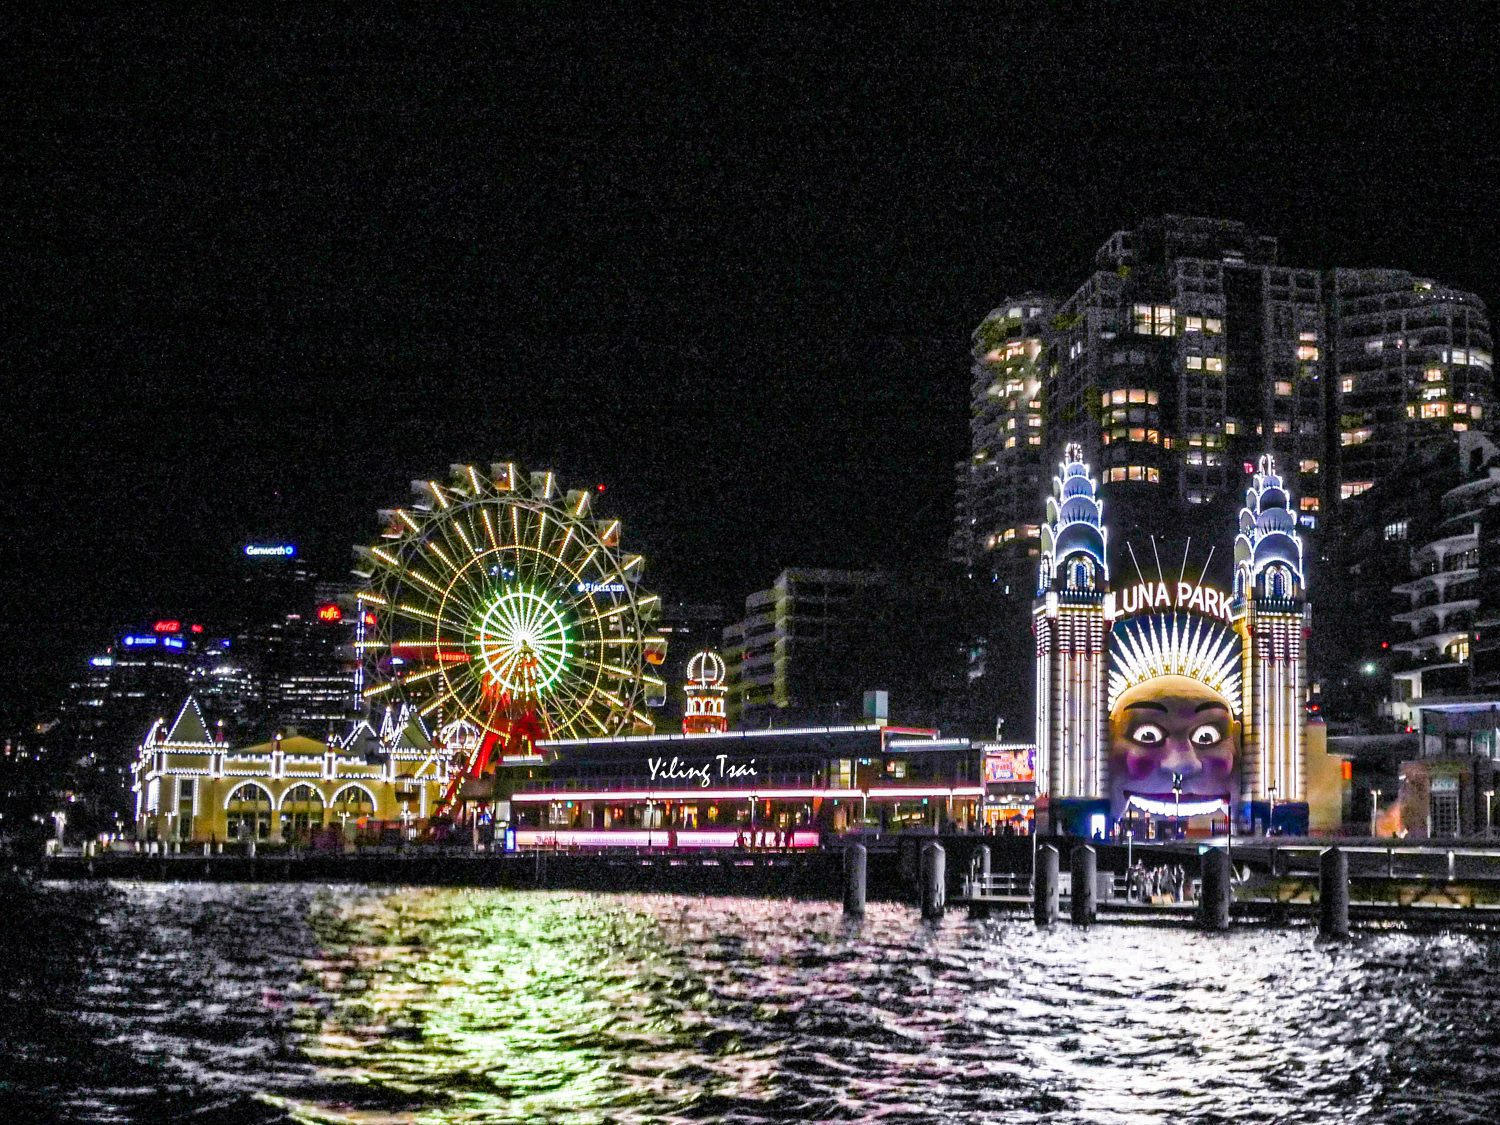 澳洲雪梨遊船推薦 玻璃船晚餐欣賞雪梨歌劇院雪梨港灣大橋夜景